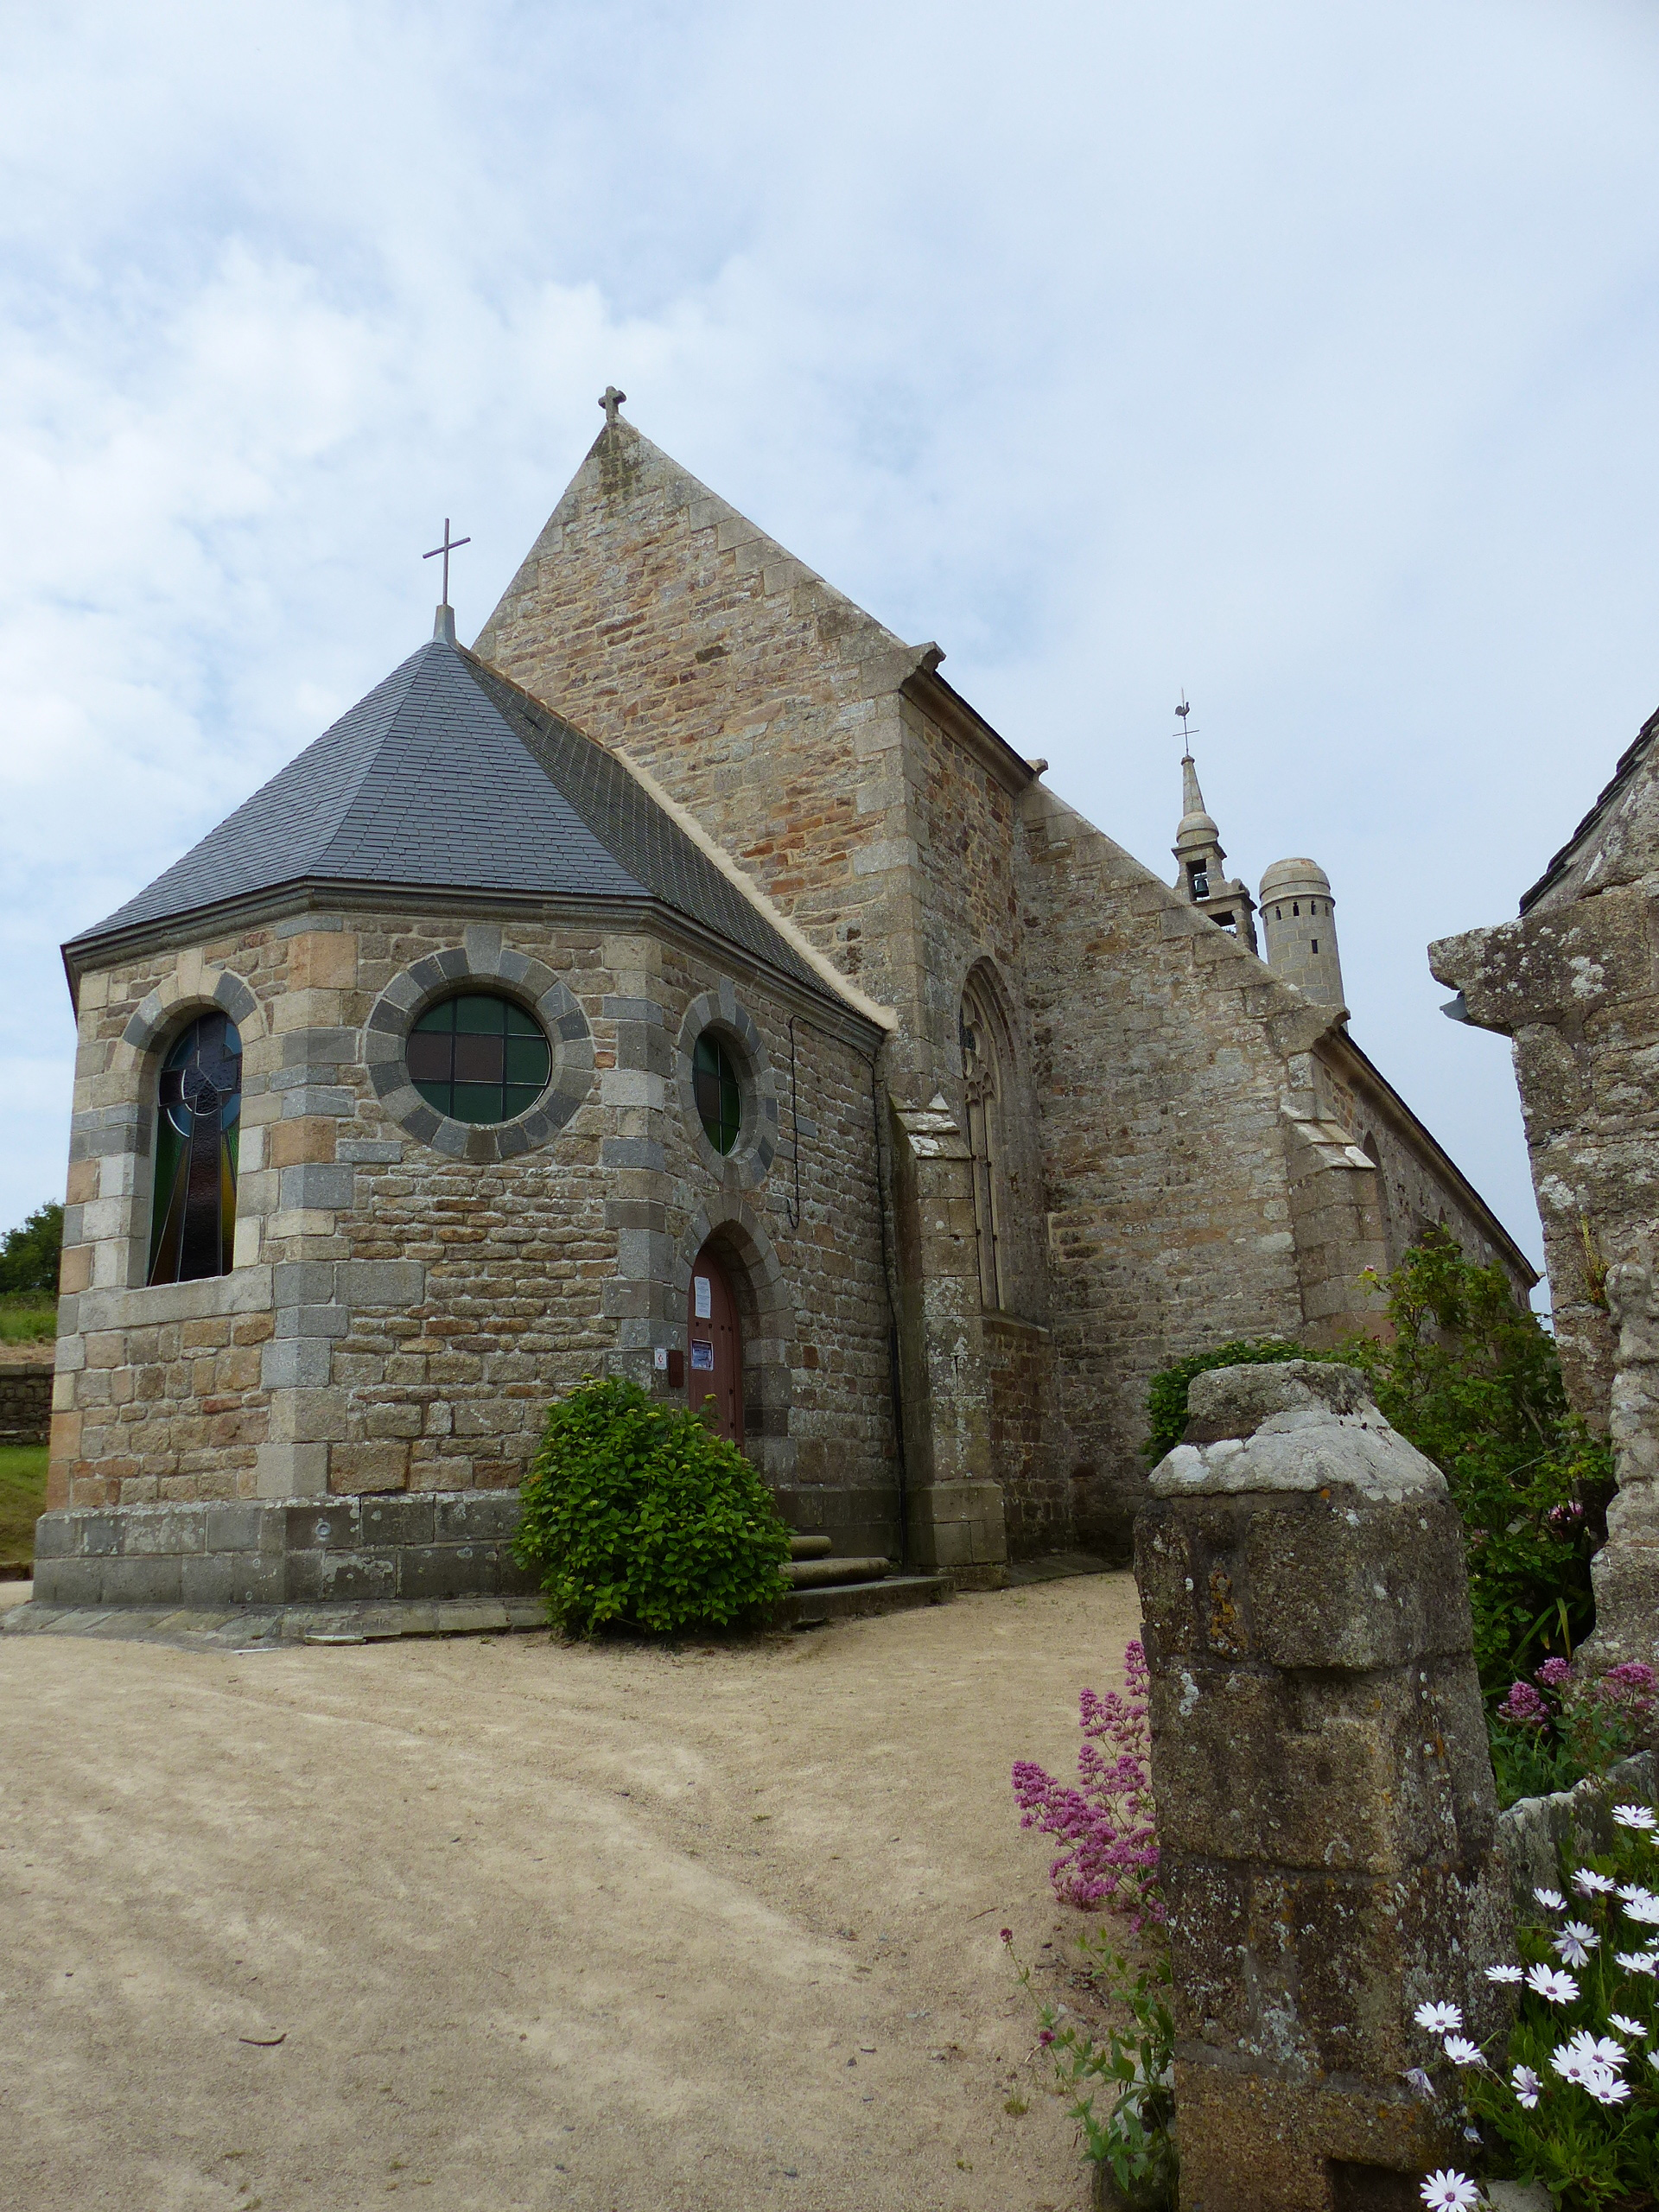 Chapelle du Yaudet village d’Asterix?